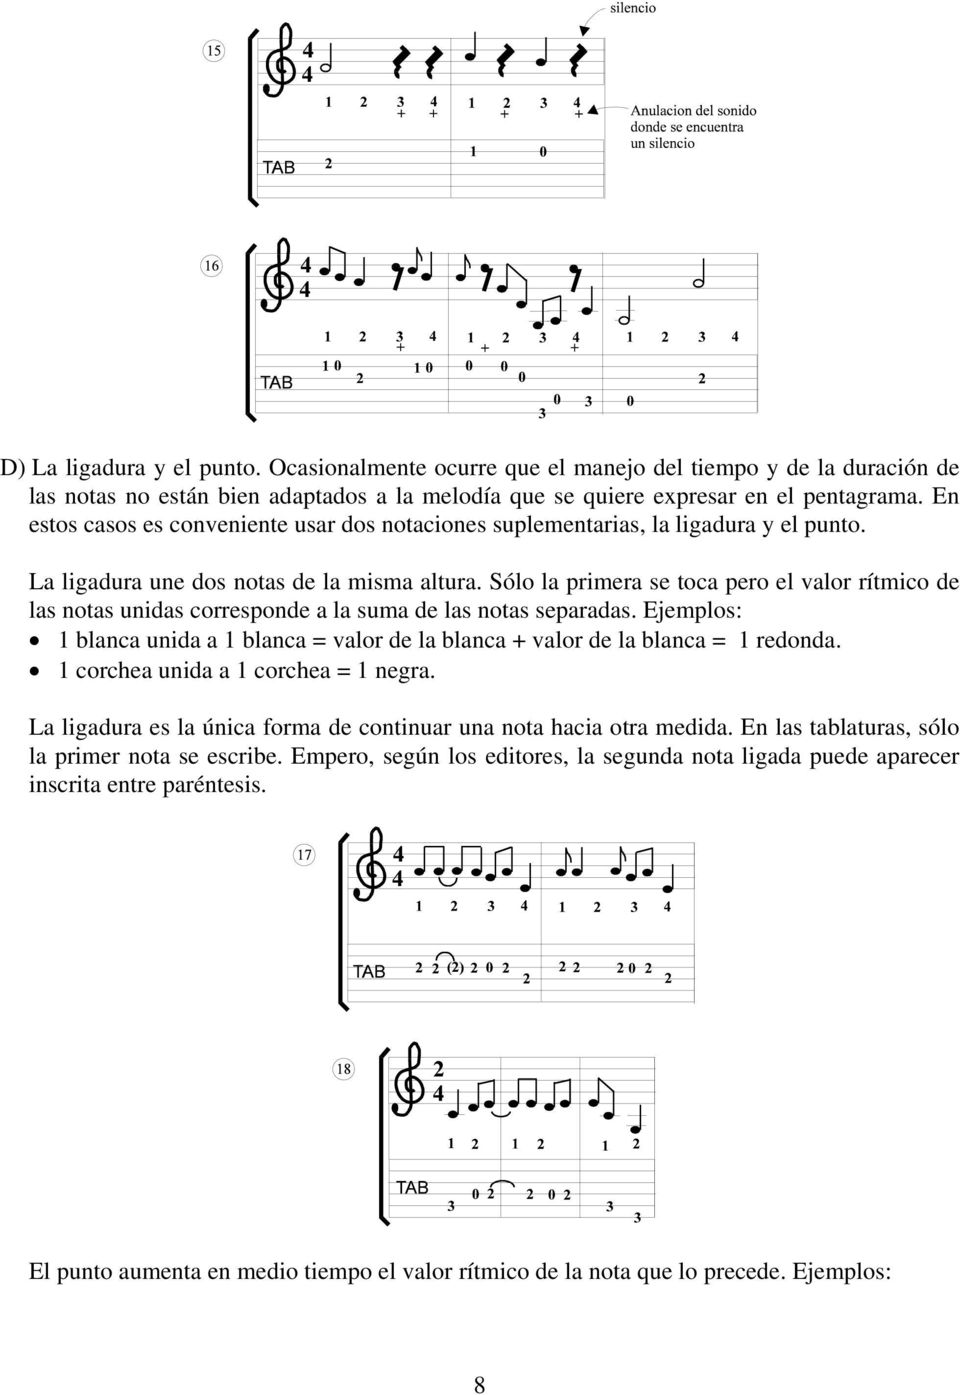 Sólo la primera se toca pero el valor rítmico de las notas unidas corresponde a la suma de las notas separadas.